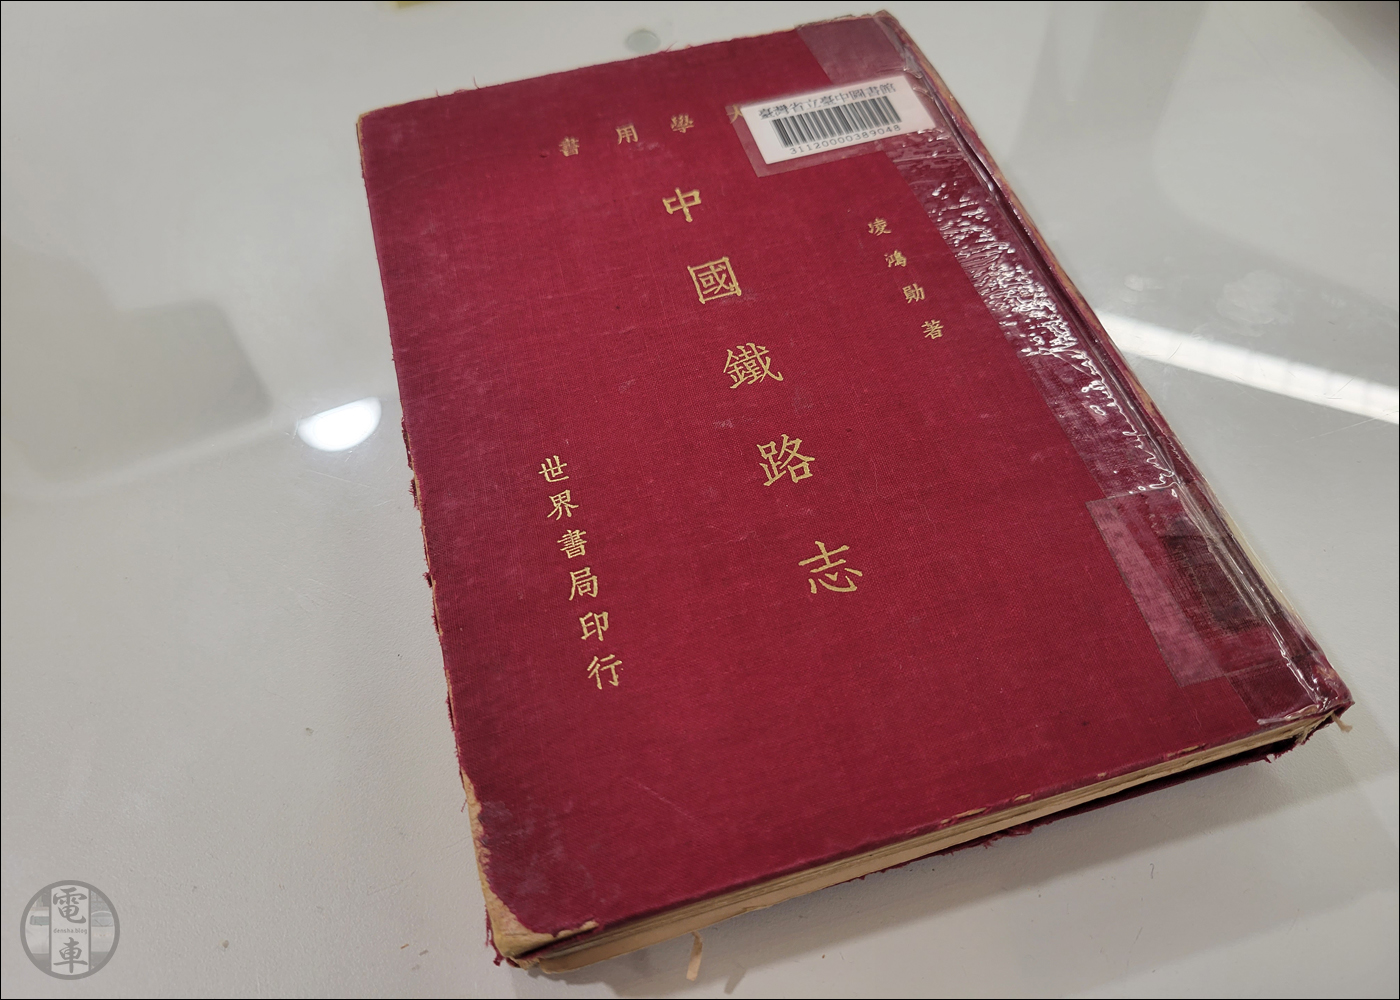 Ling Hongxun - Feljegyzések a kínai vasútról c. könyv egy példánya.